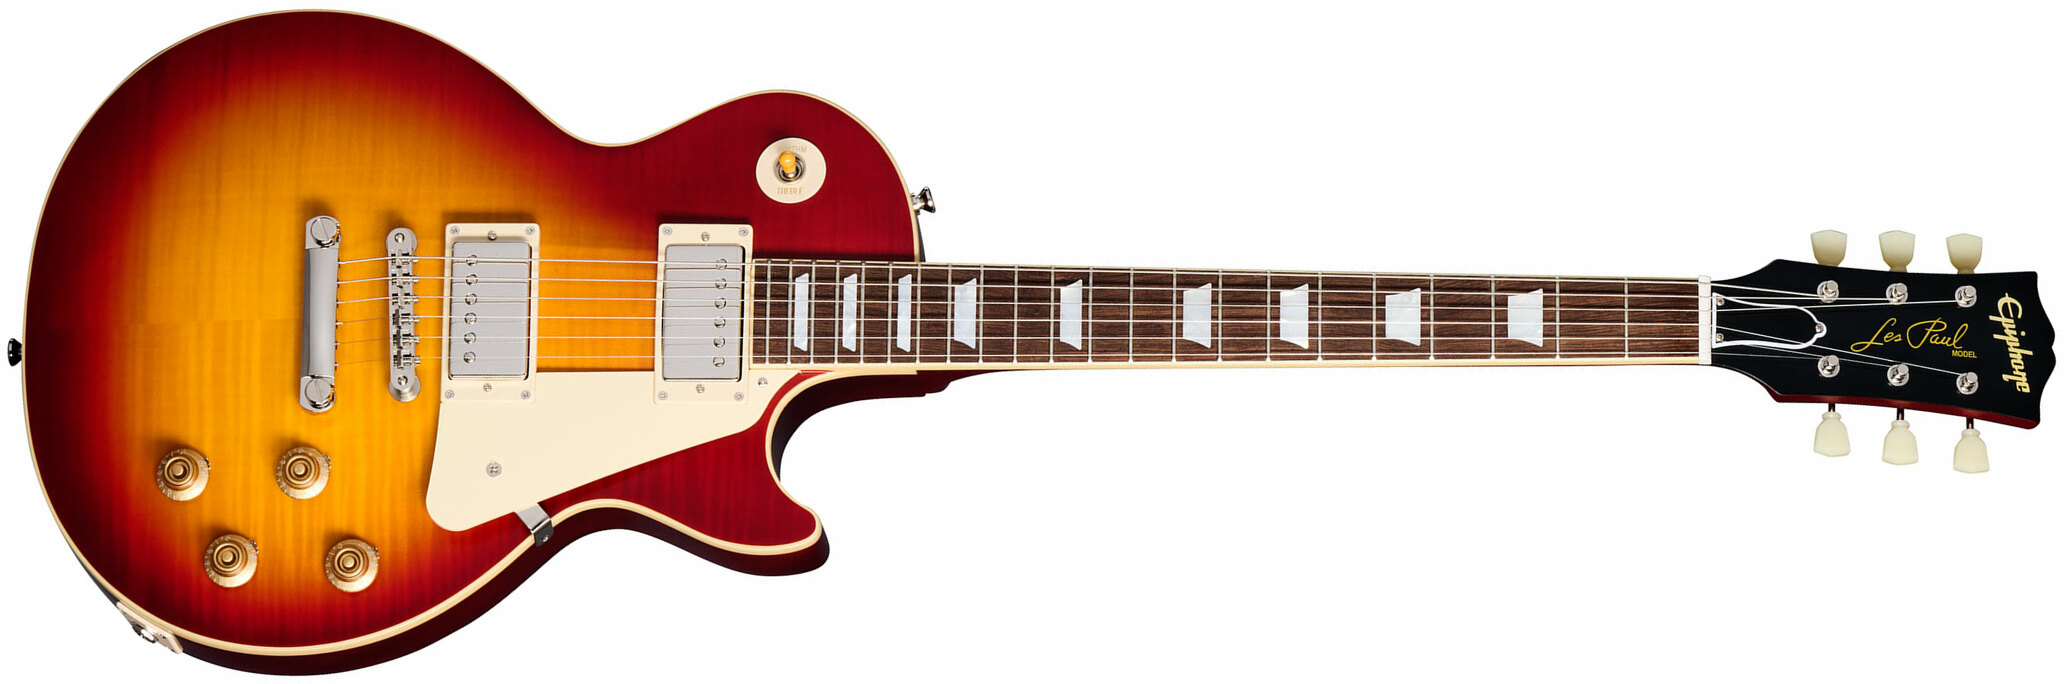 Epiphone 1959 Les Paul Standard Inspired By 2h Gibson Ht Lau - Vos Factory Burst - Guitare Électrique Single Cut - Main picture